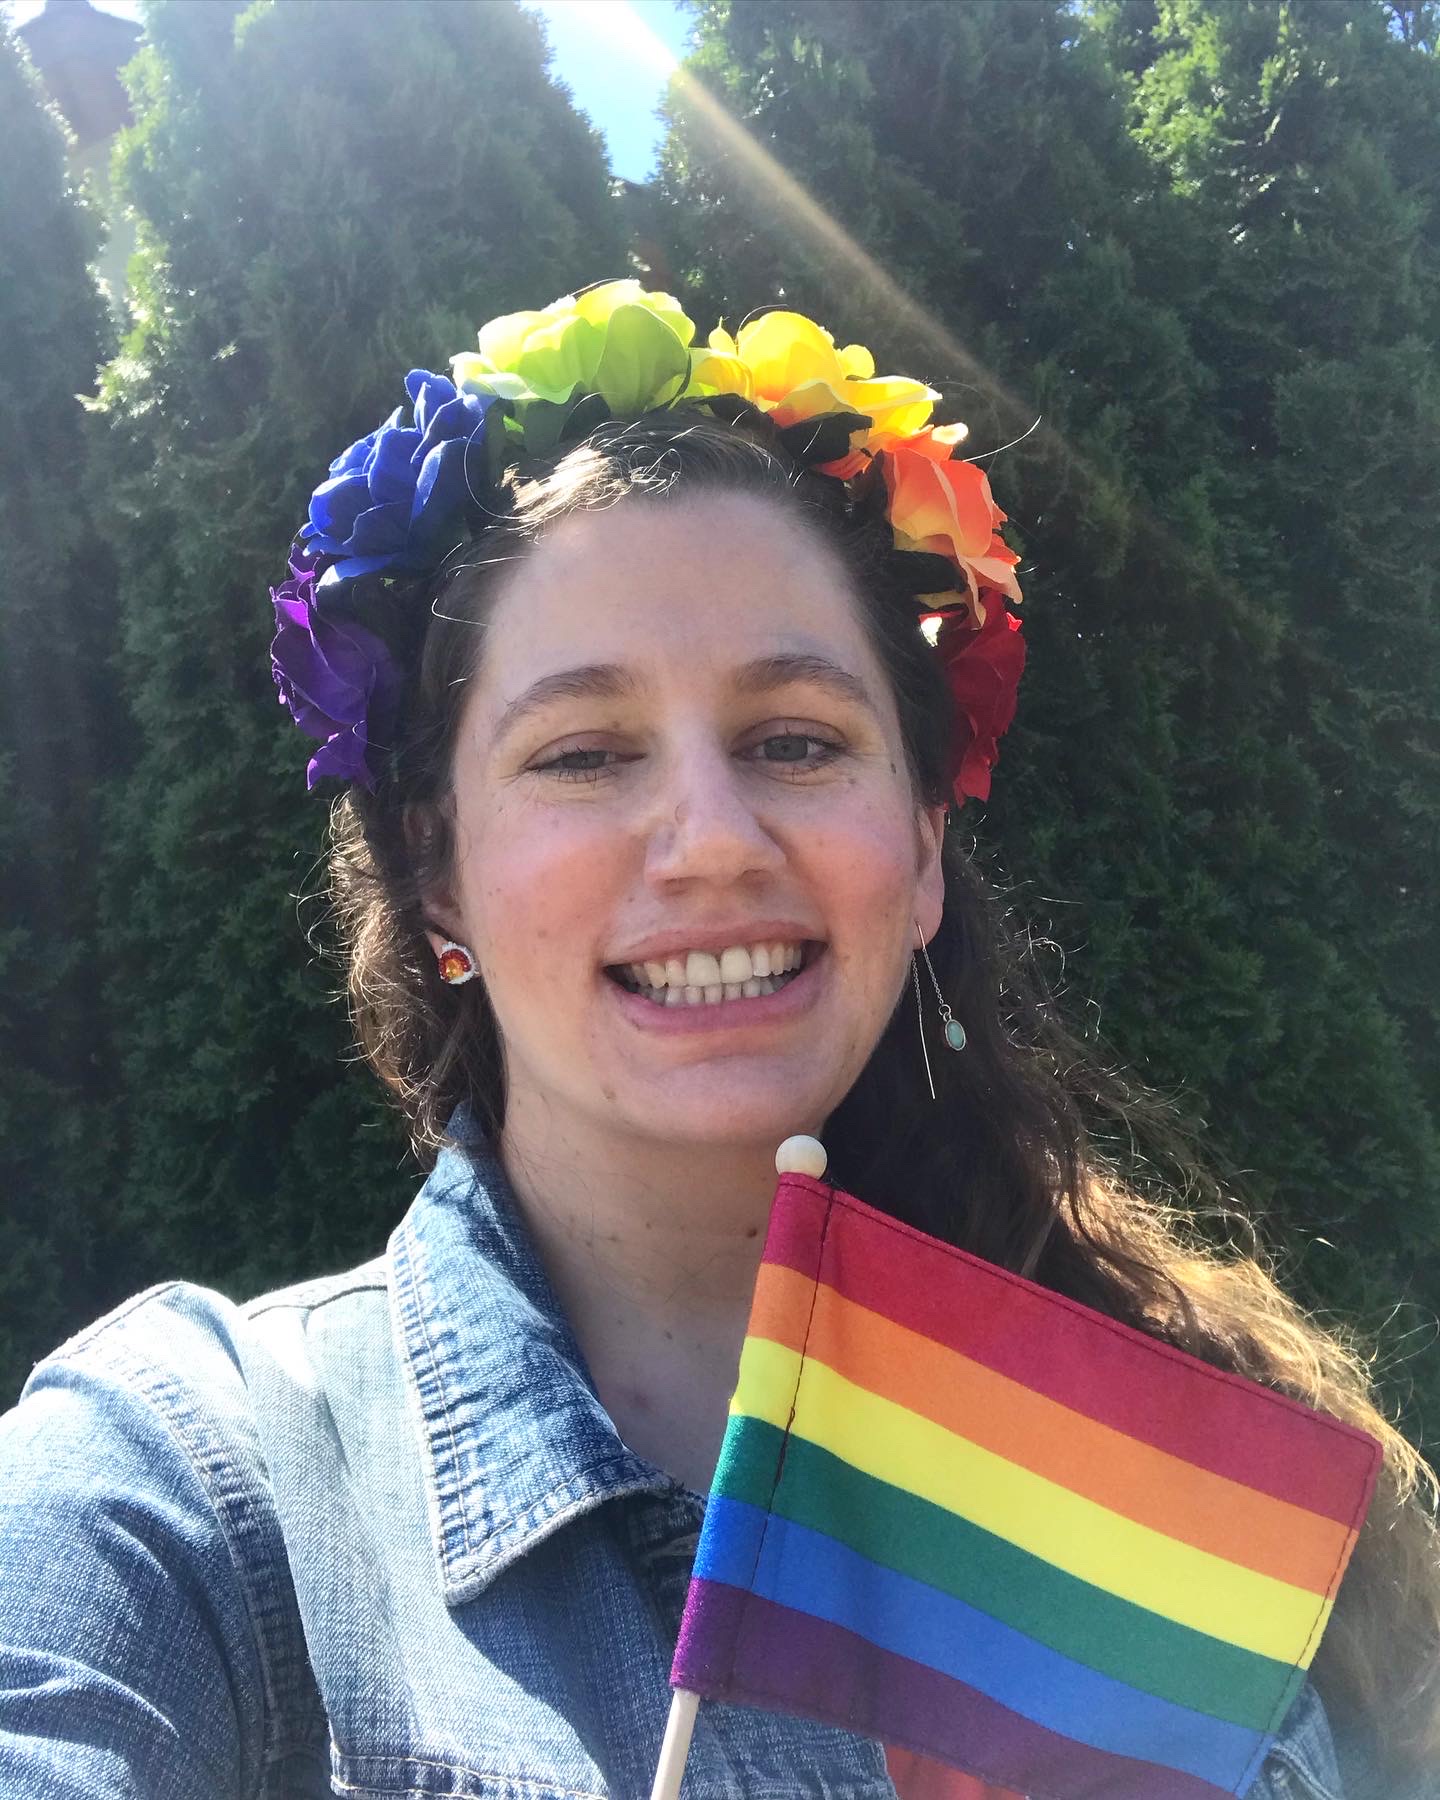 Kat at the Pride Parade